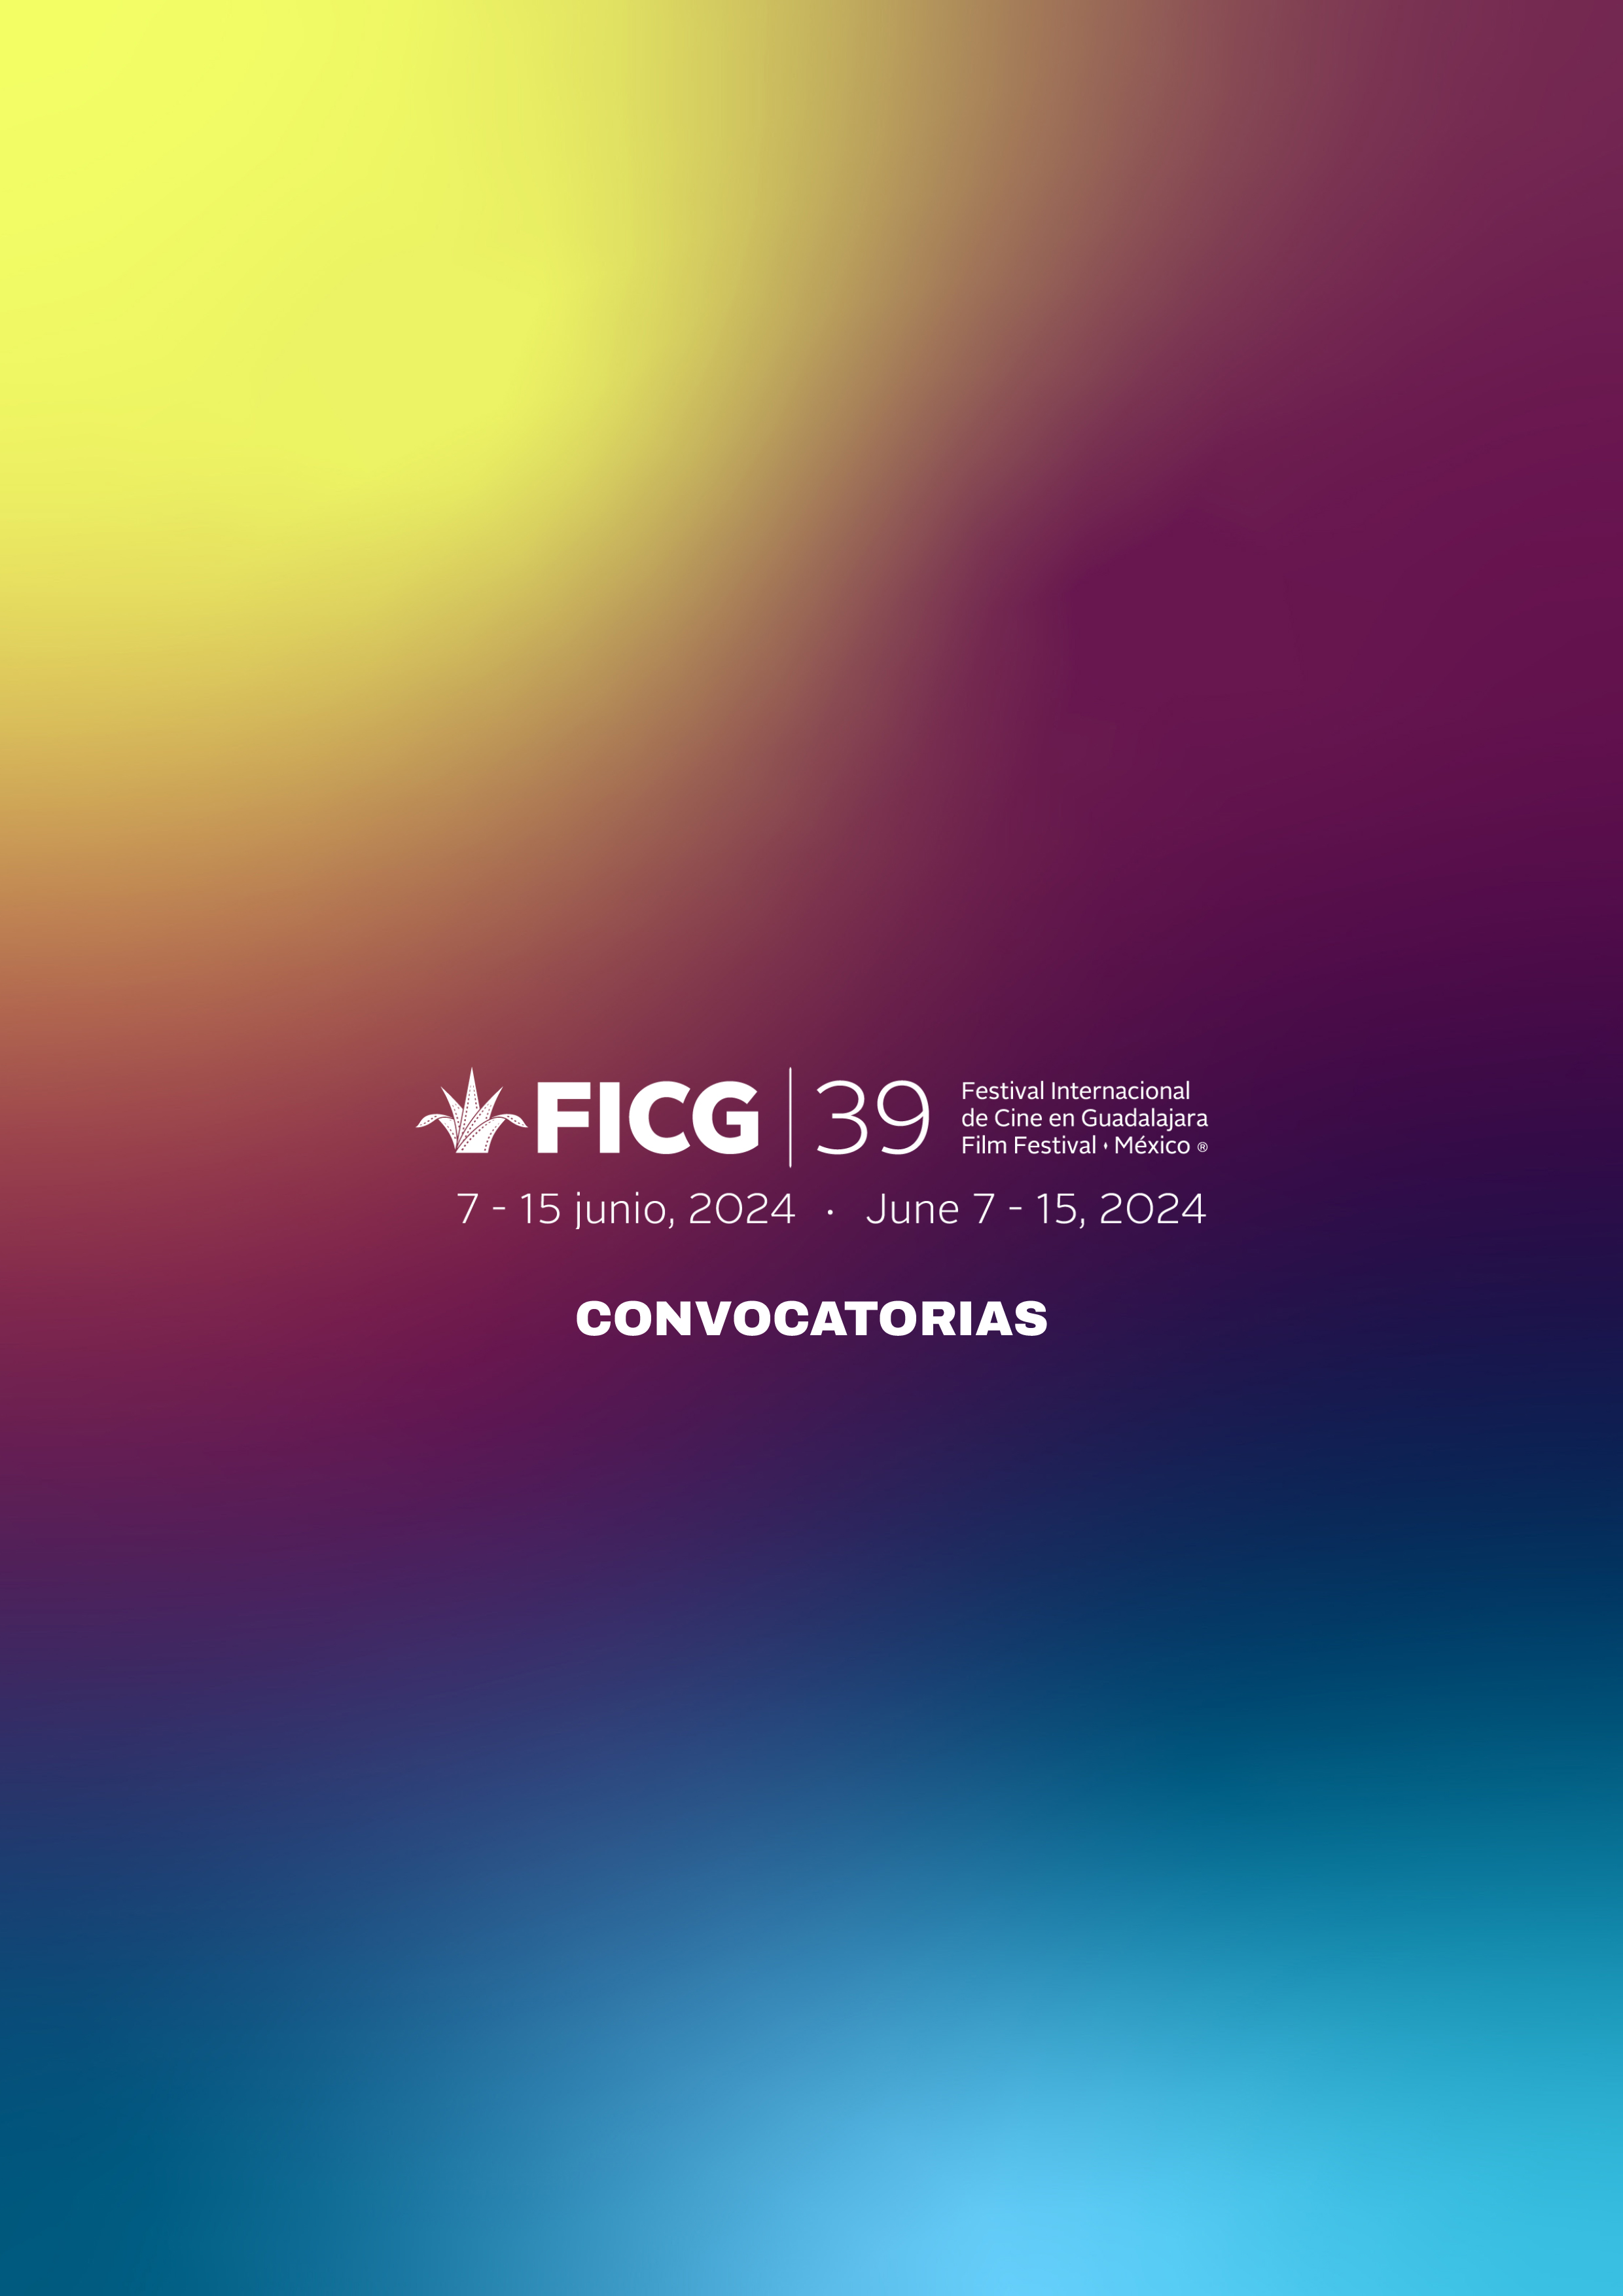 FICG 39 Convocatoria